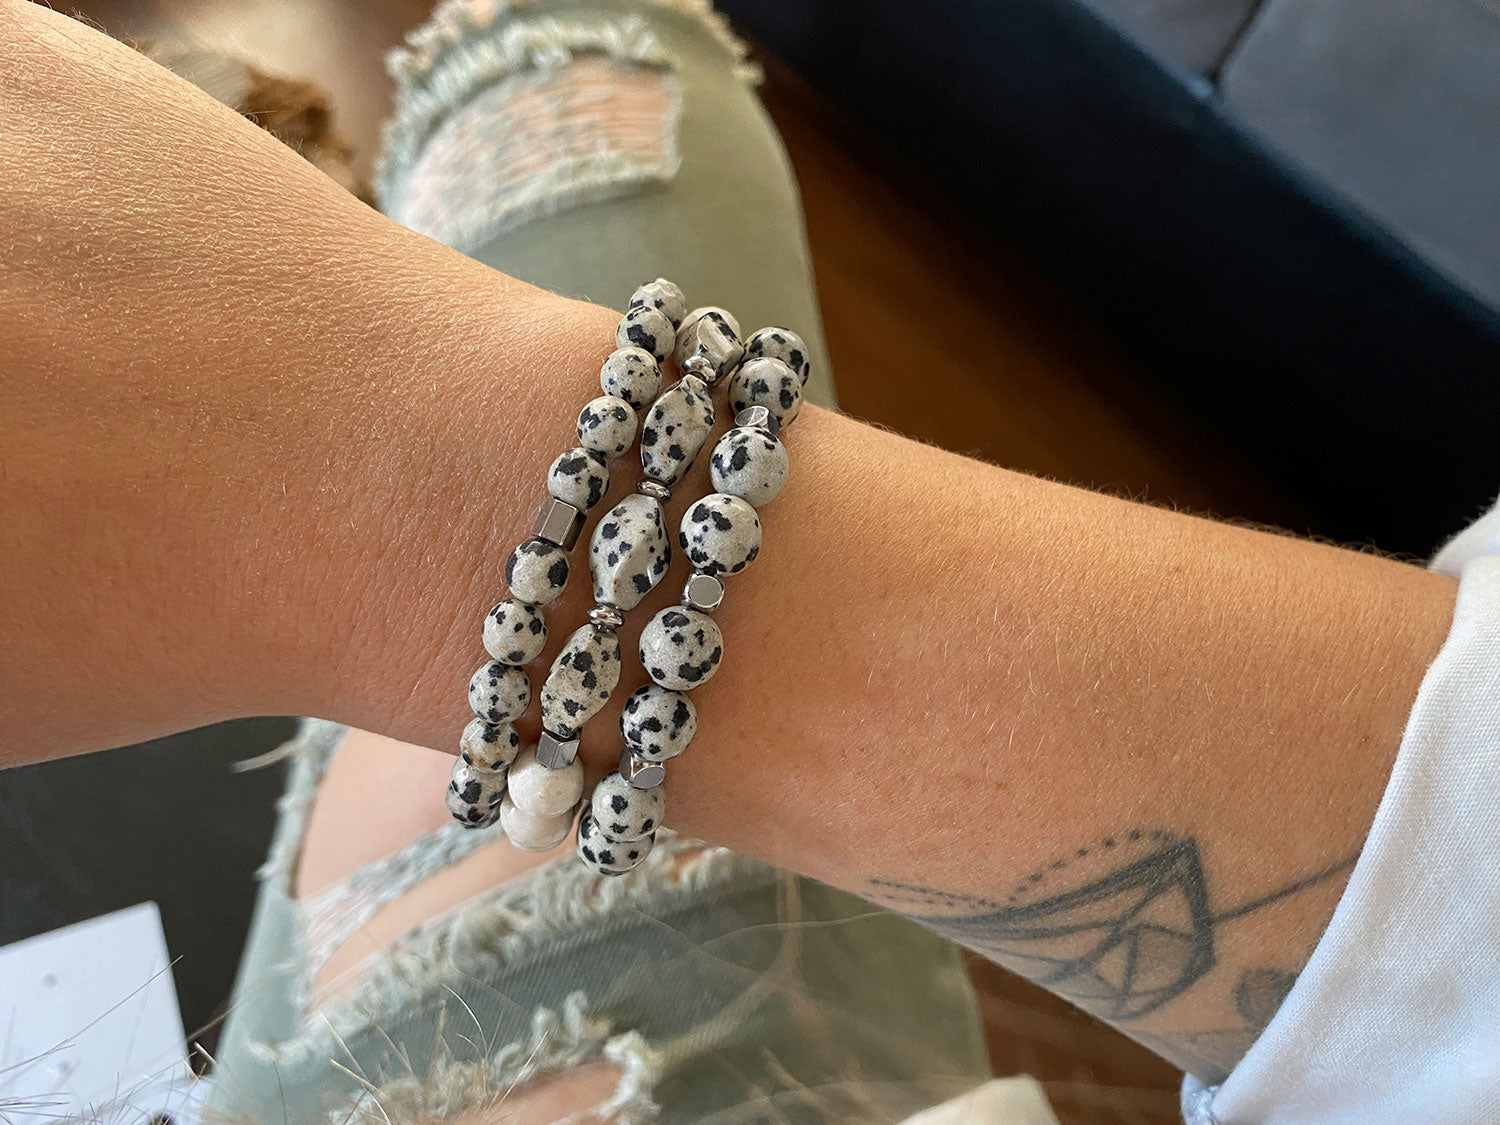 Silver Dalmatian bracelet set